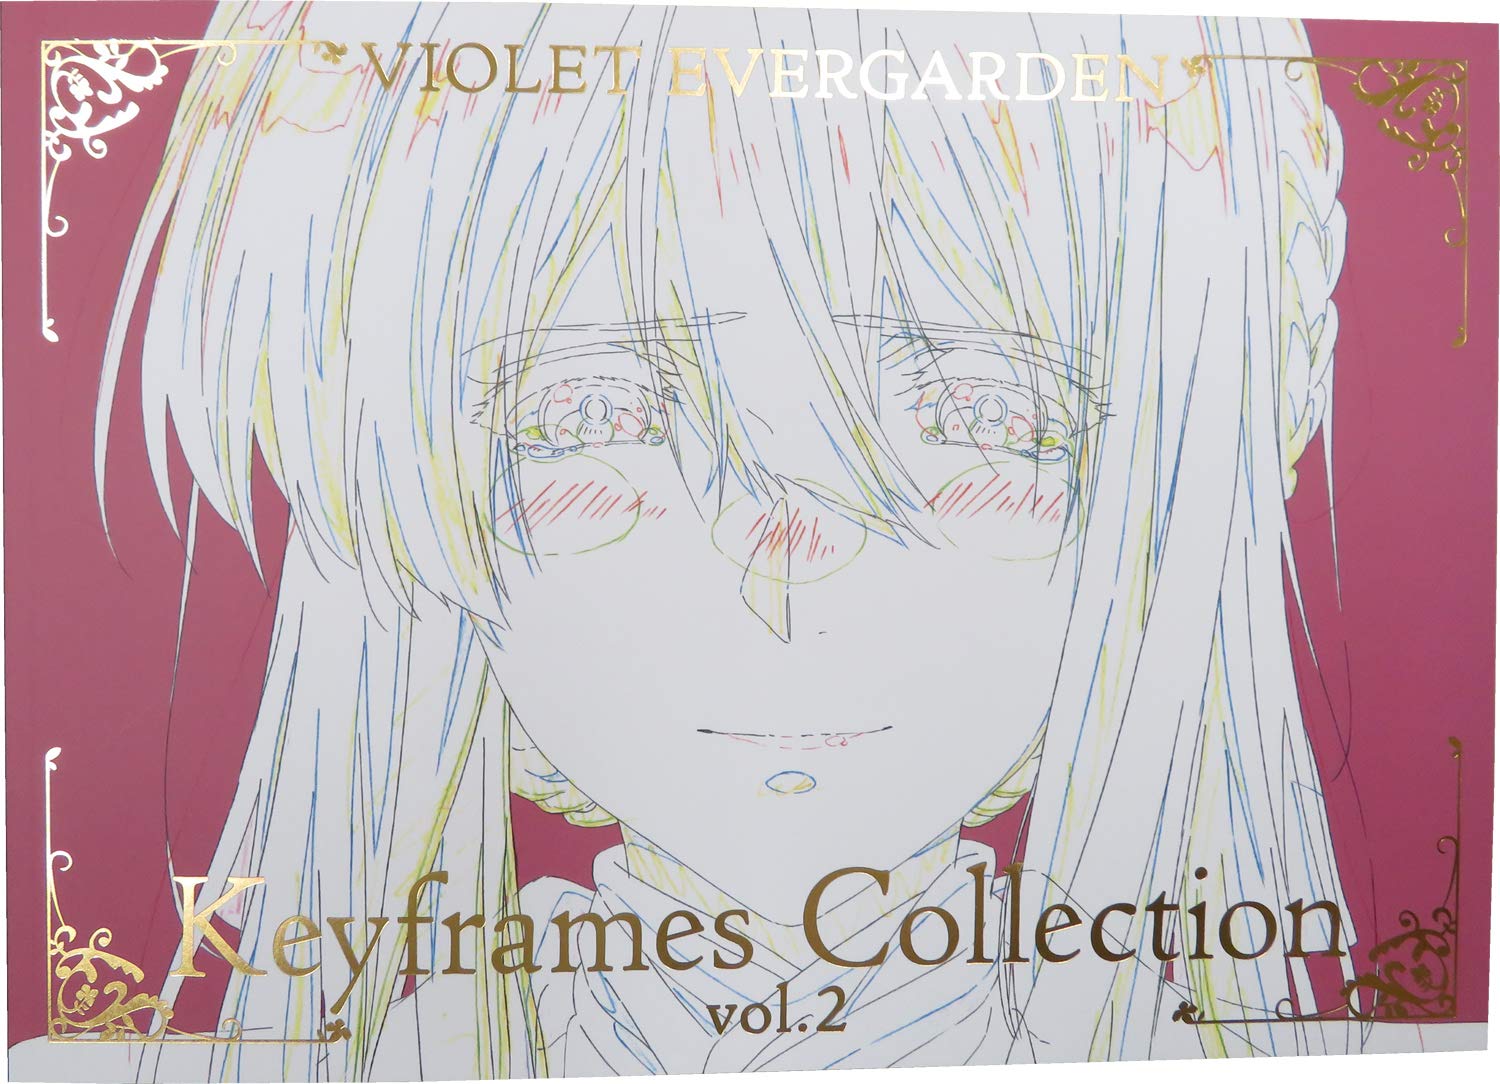 Nếu bạn là một fan của Kyoto Animation Violet Evergarden, thì đây chính là sản phẩm dành cho bạn. Kyoto Animation Violet Evergarden Keyframes Collection vol.2 là bộ sưu tập chứa đầy những hình ảnh và bức tranh vẽ đẹp nhất được lấy từ bộ phim. Hãy nhanh tay mua sản phẩm này để sở hữu những hình ảnh đẹp nhất của Violet Evergarden, và cảm nhận sự tuyệt vời của bộ phim này trên màn hình tivi của bạn.